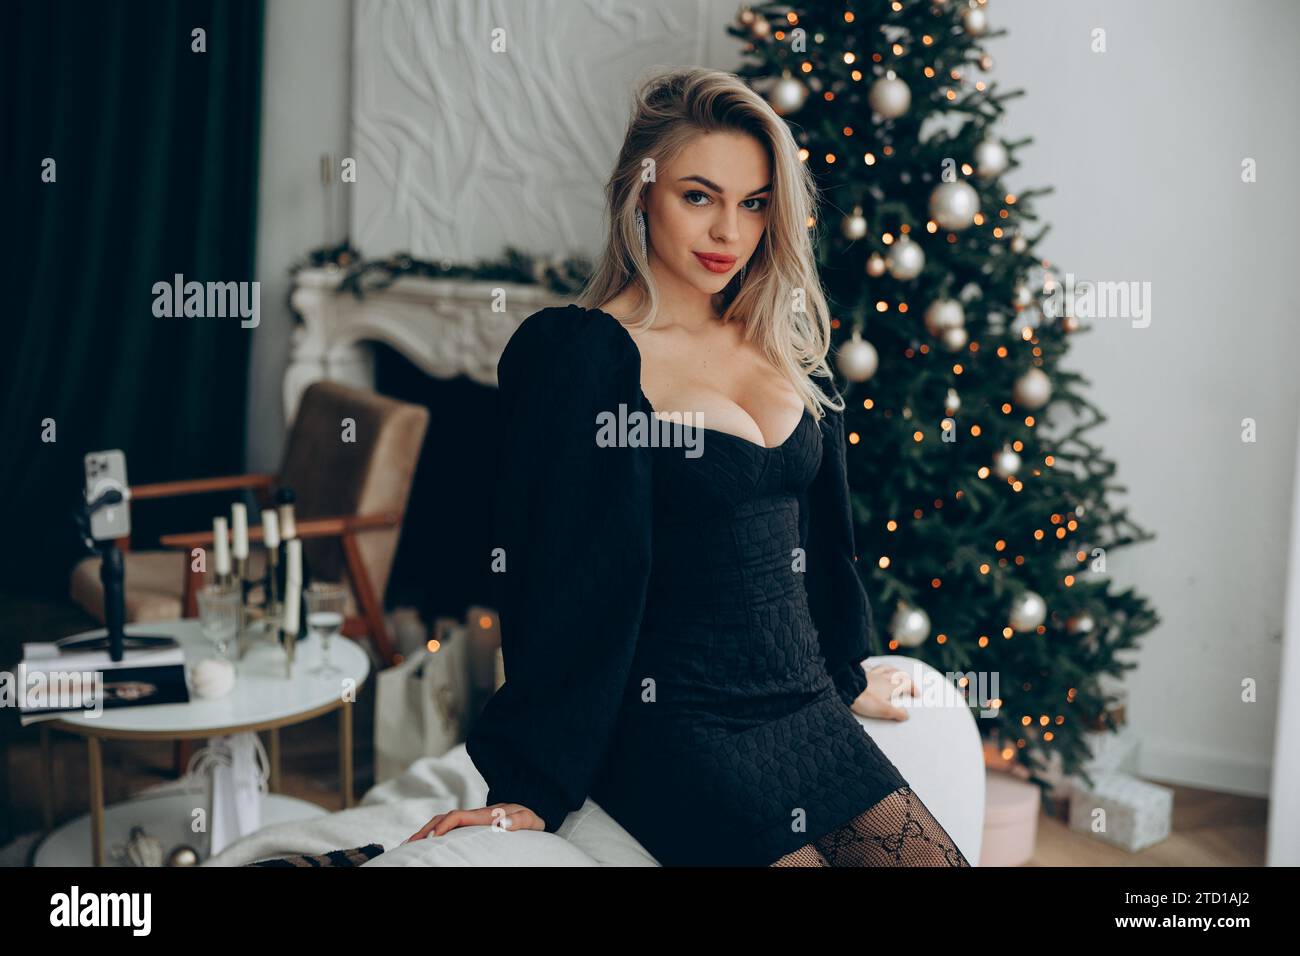 Junge verführerische blonde Frau, die neben einem geschmückten Weihnachtsbaum sitzt, in stilvollem schwarzen Kleid mit Dekolleté. Nahaufnahme. Stockfoto